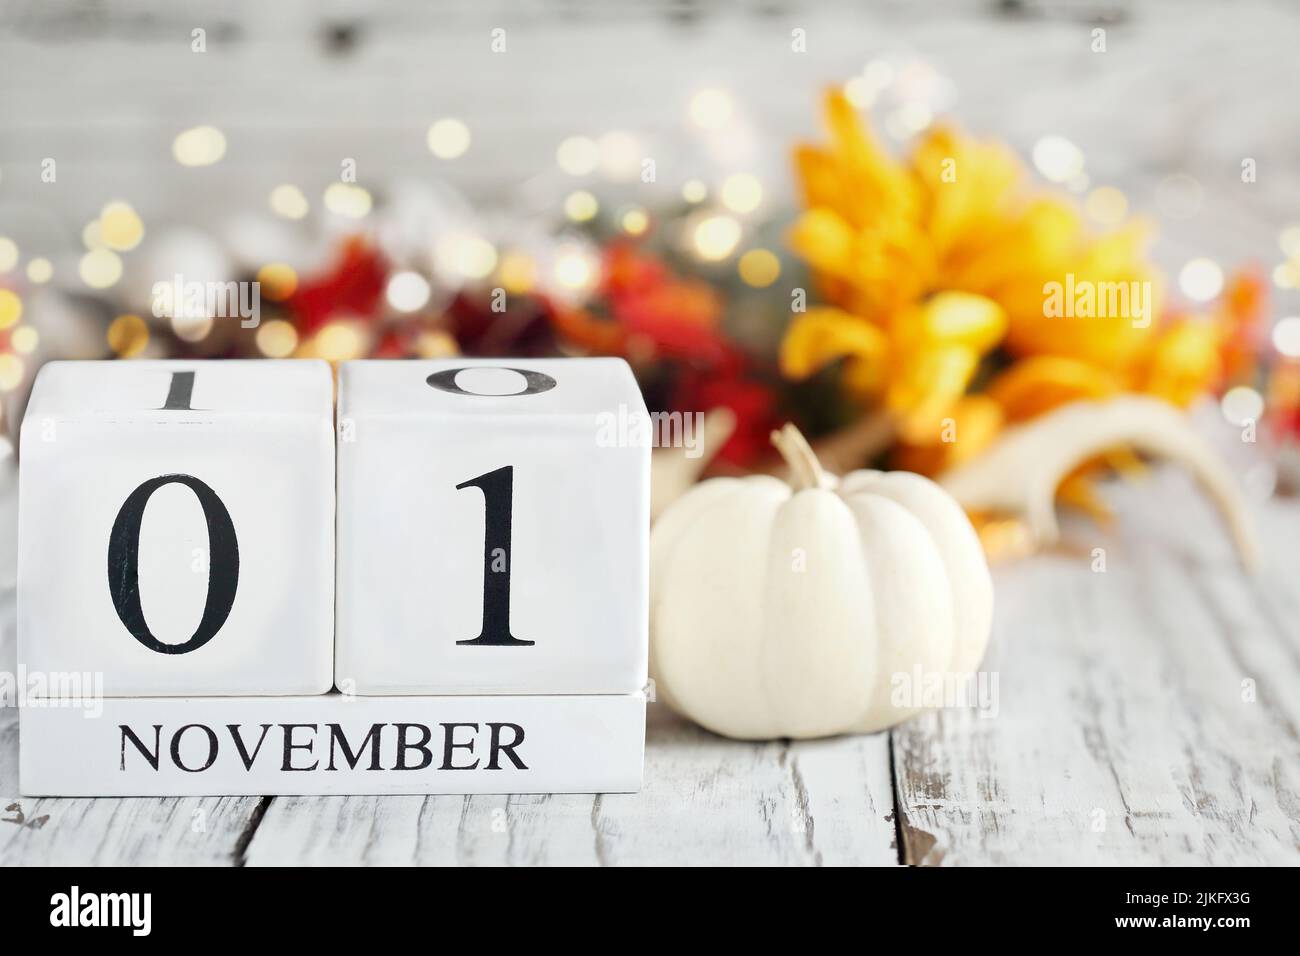 Blocs de calendrier en bois blanc avec la date 1 novembre et les décorations d'automne sur une table en bois. Mise au point sélective avec arrière-plan flou. Banque D'Images